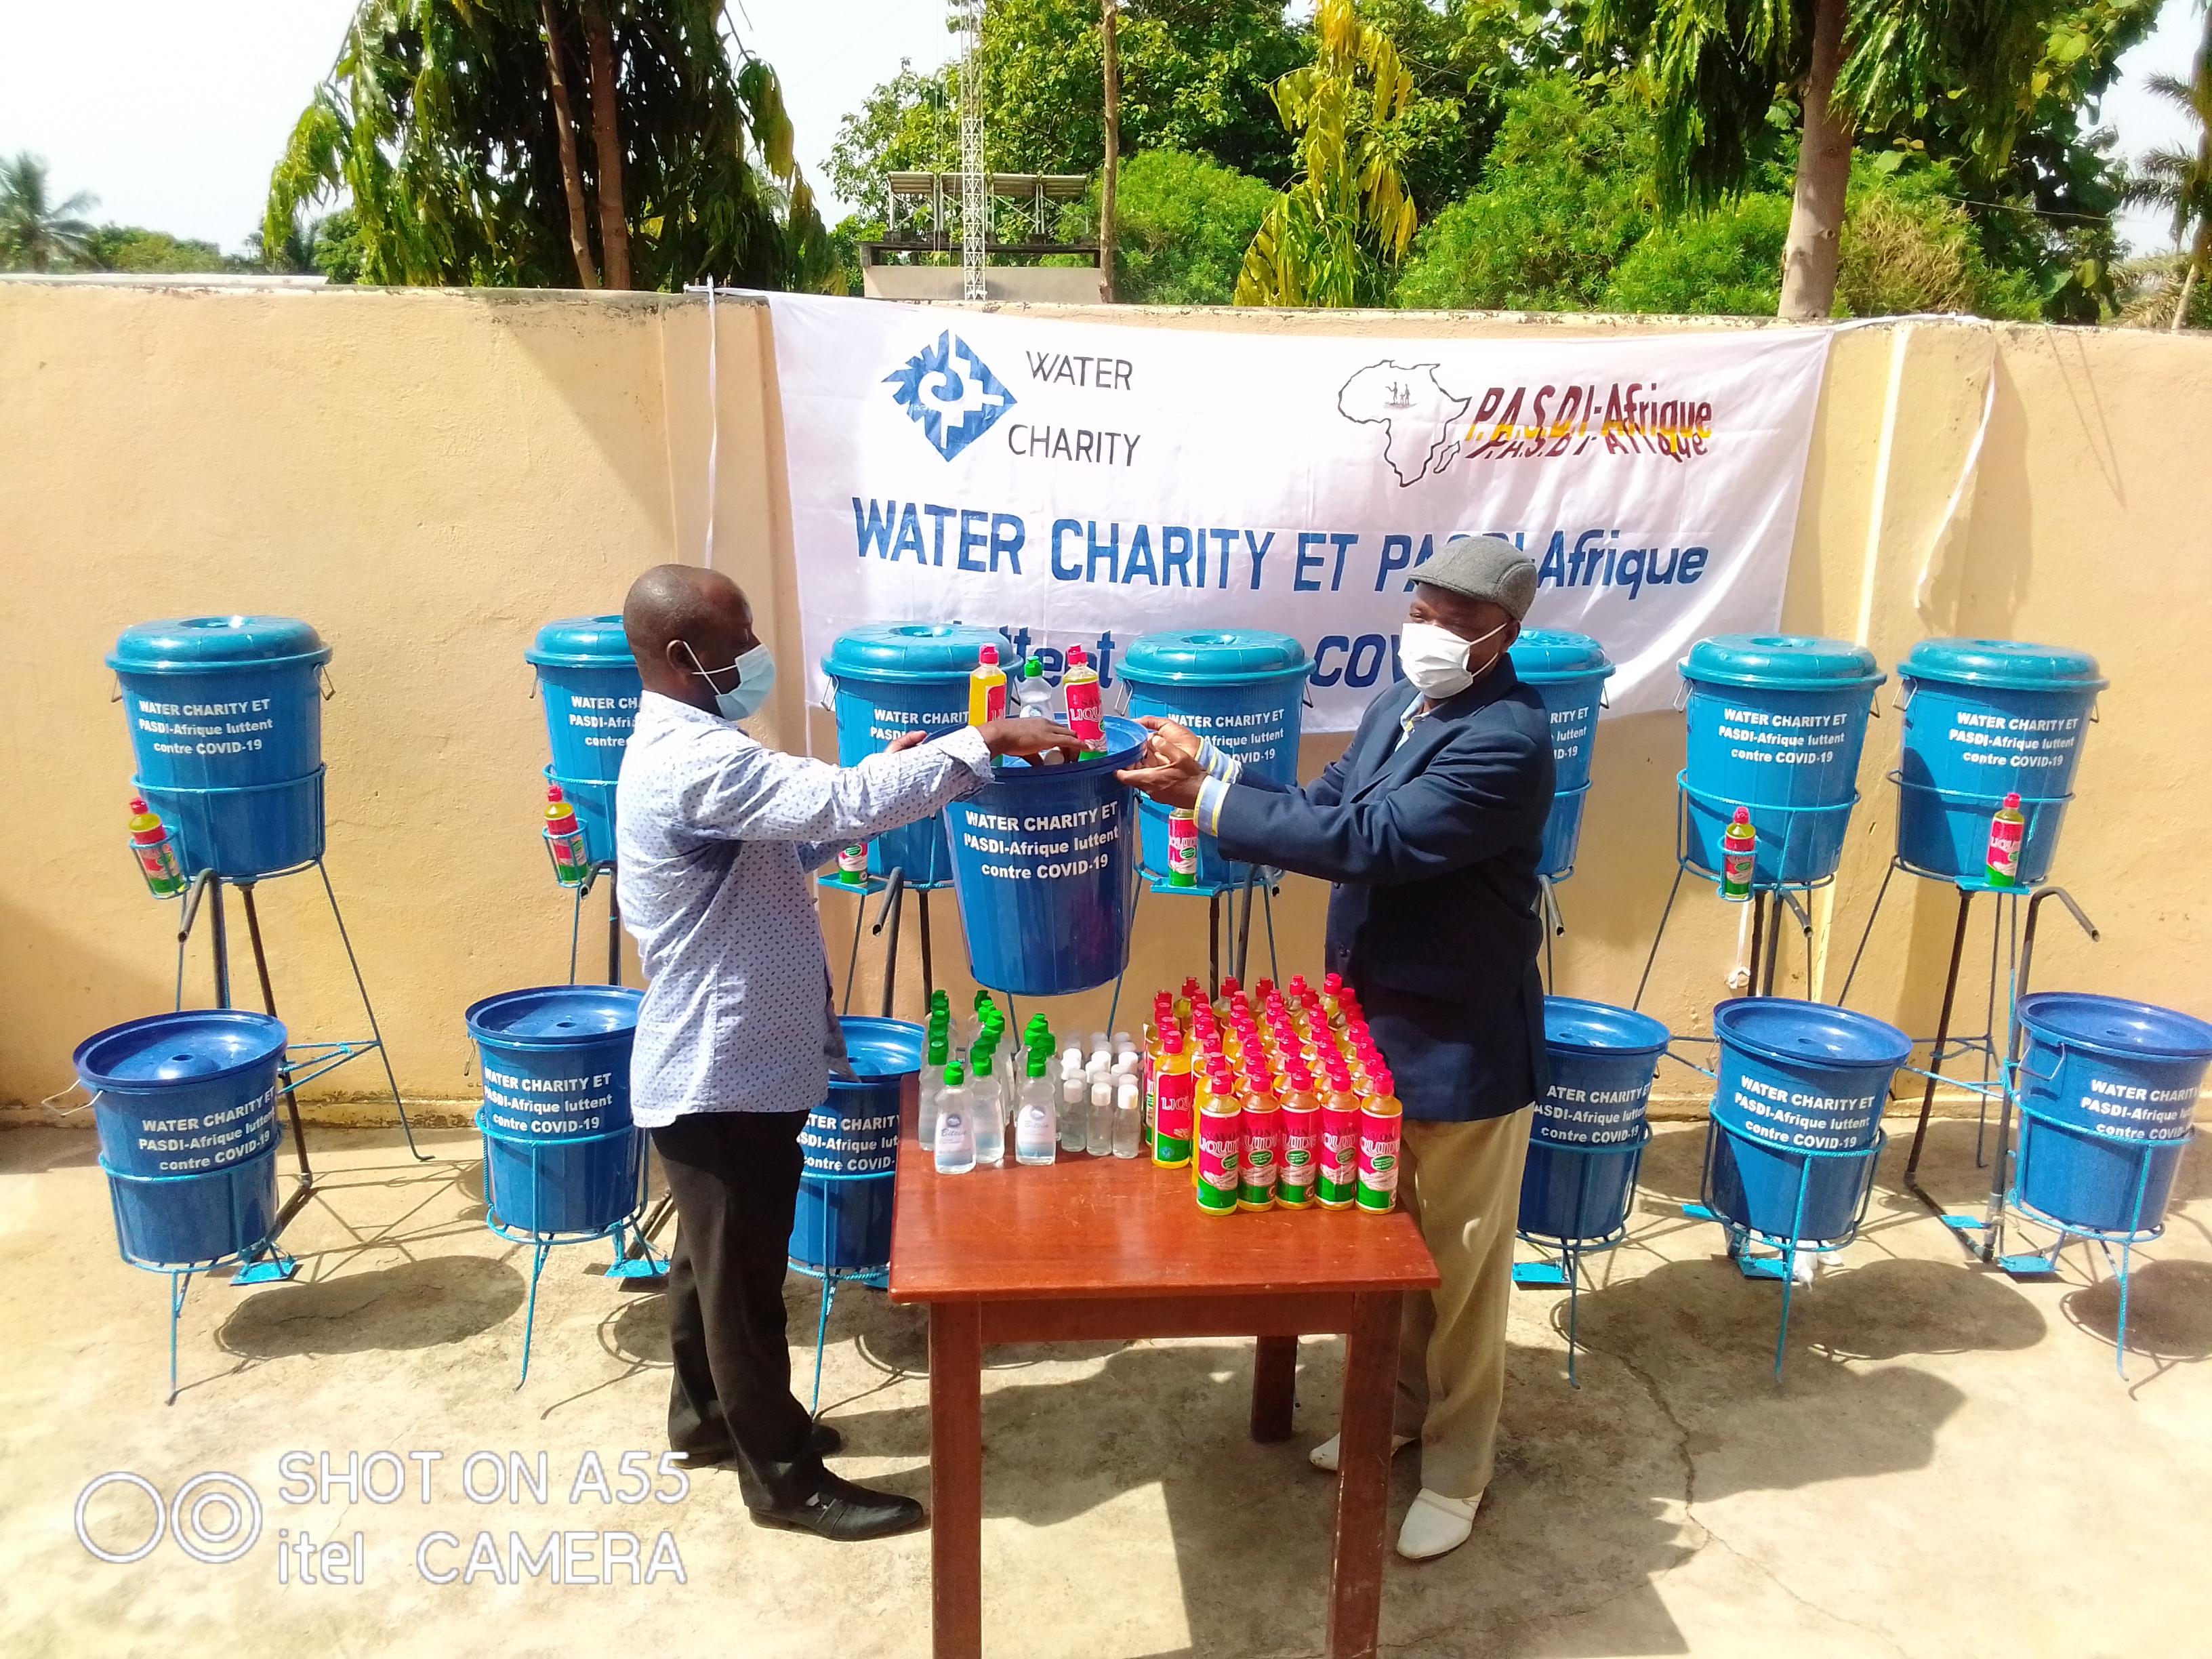 Sokodé-Togo/Covid19: l’ONG PASDI-AFRIQUE accompagne la Mairie de la commune de Tchaoudjo 3 dans la lutte contre la pandémie